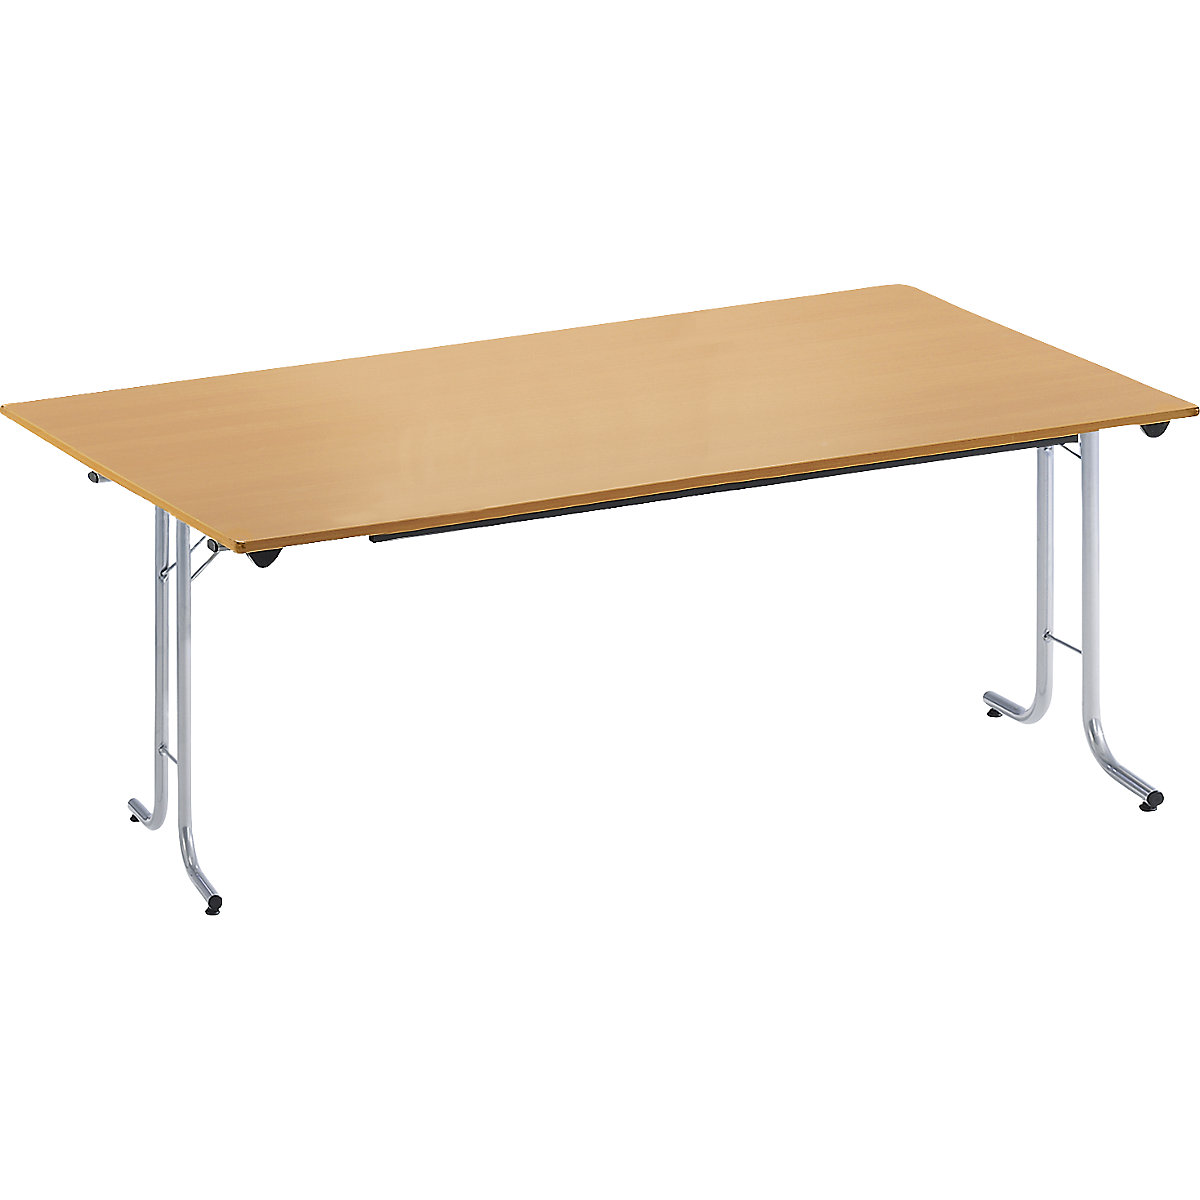 Inklapbare tafel, met afgeronde randen, tafelpoten van staalbuis, bladvorm rechthoekig, 1600 x 800 mm, frame aluminiumkleurig, blad beukenhoutdecor-19